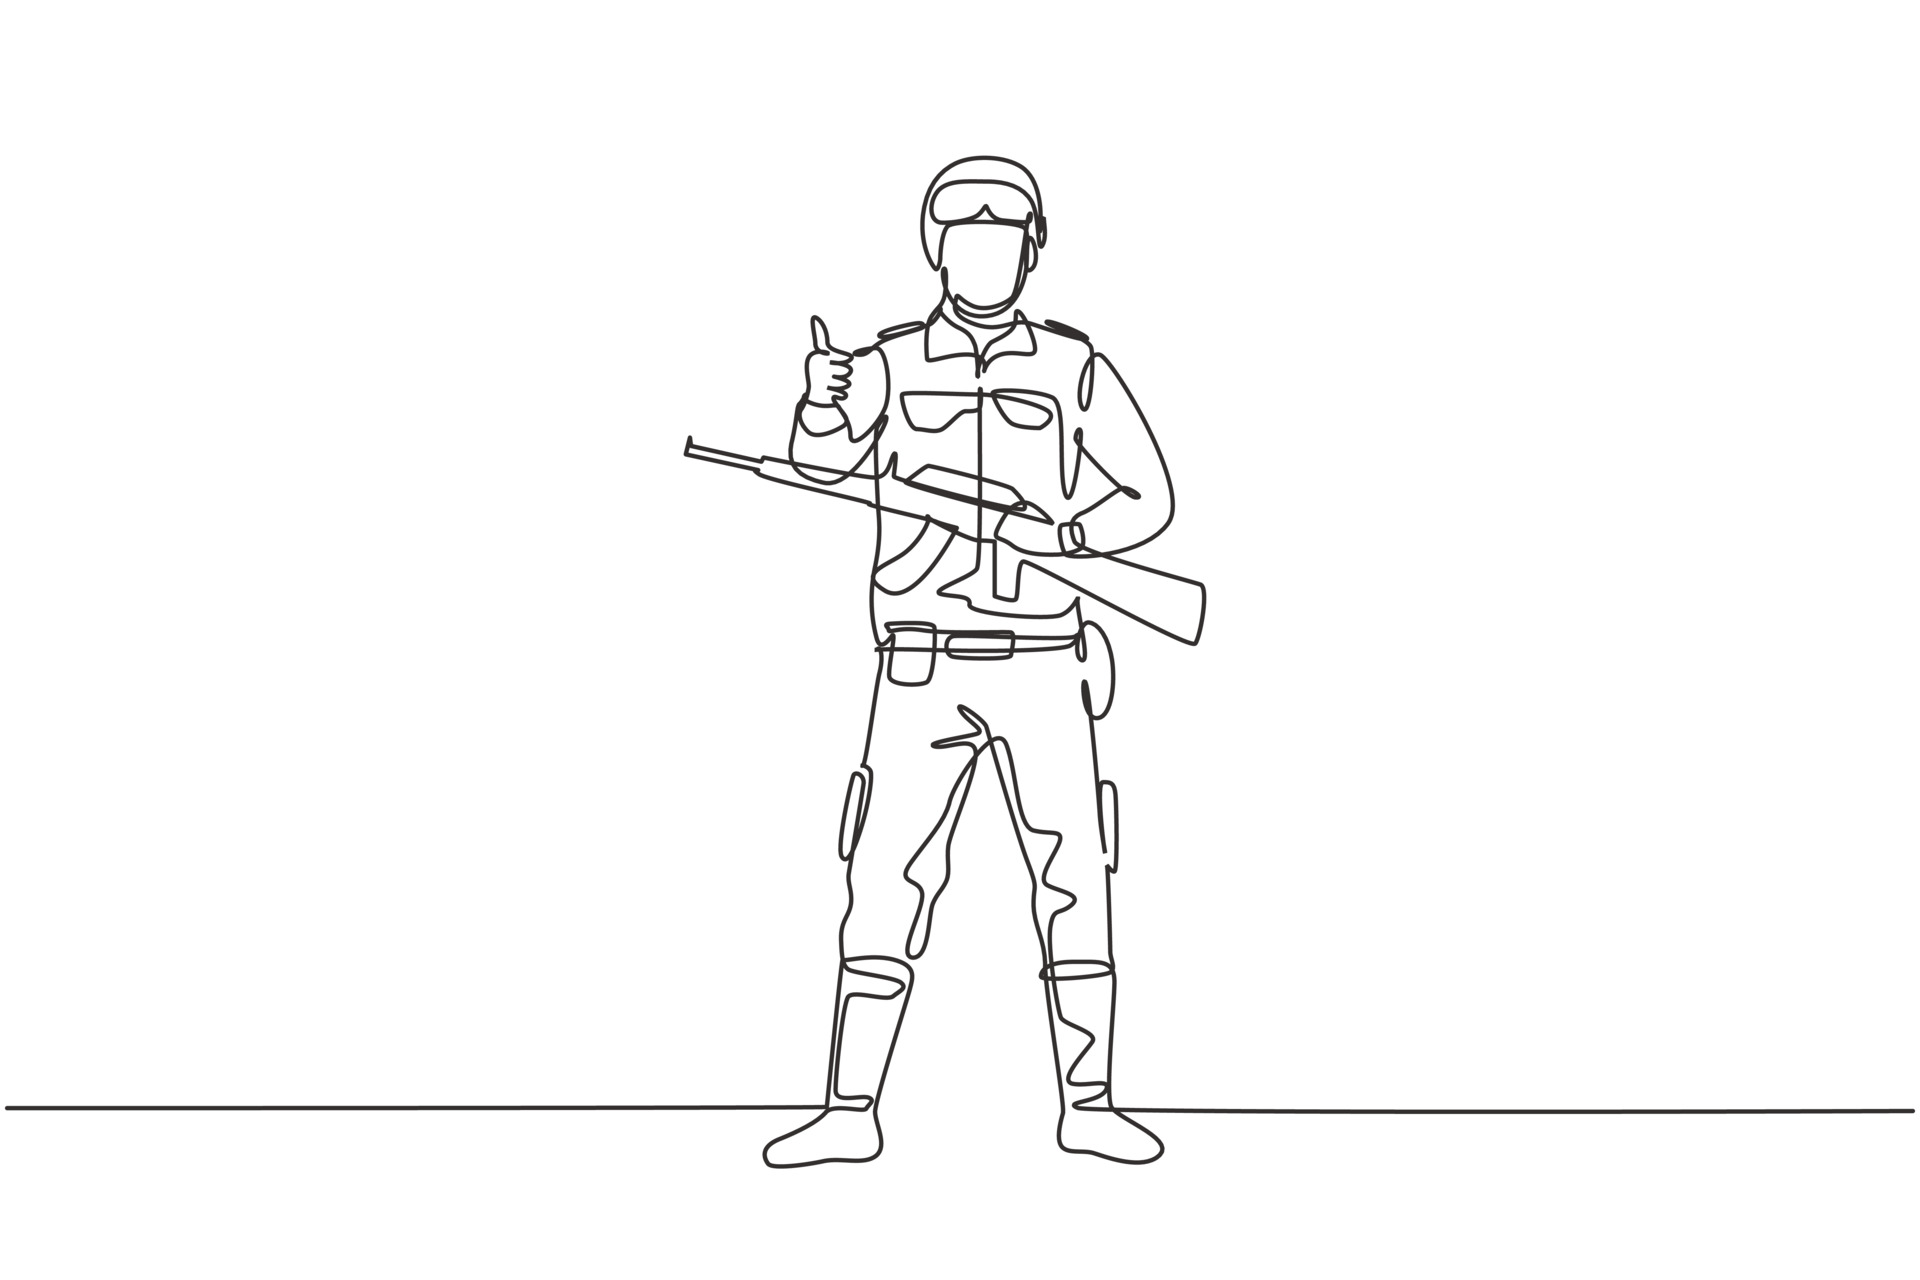 army guys sketchings